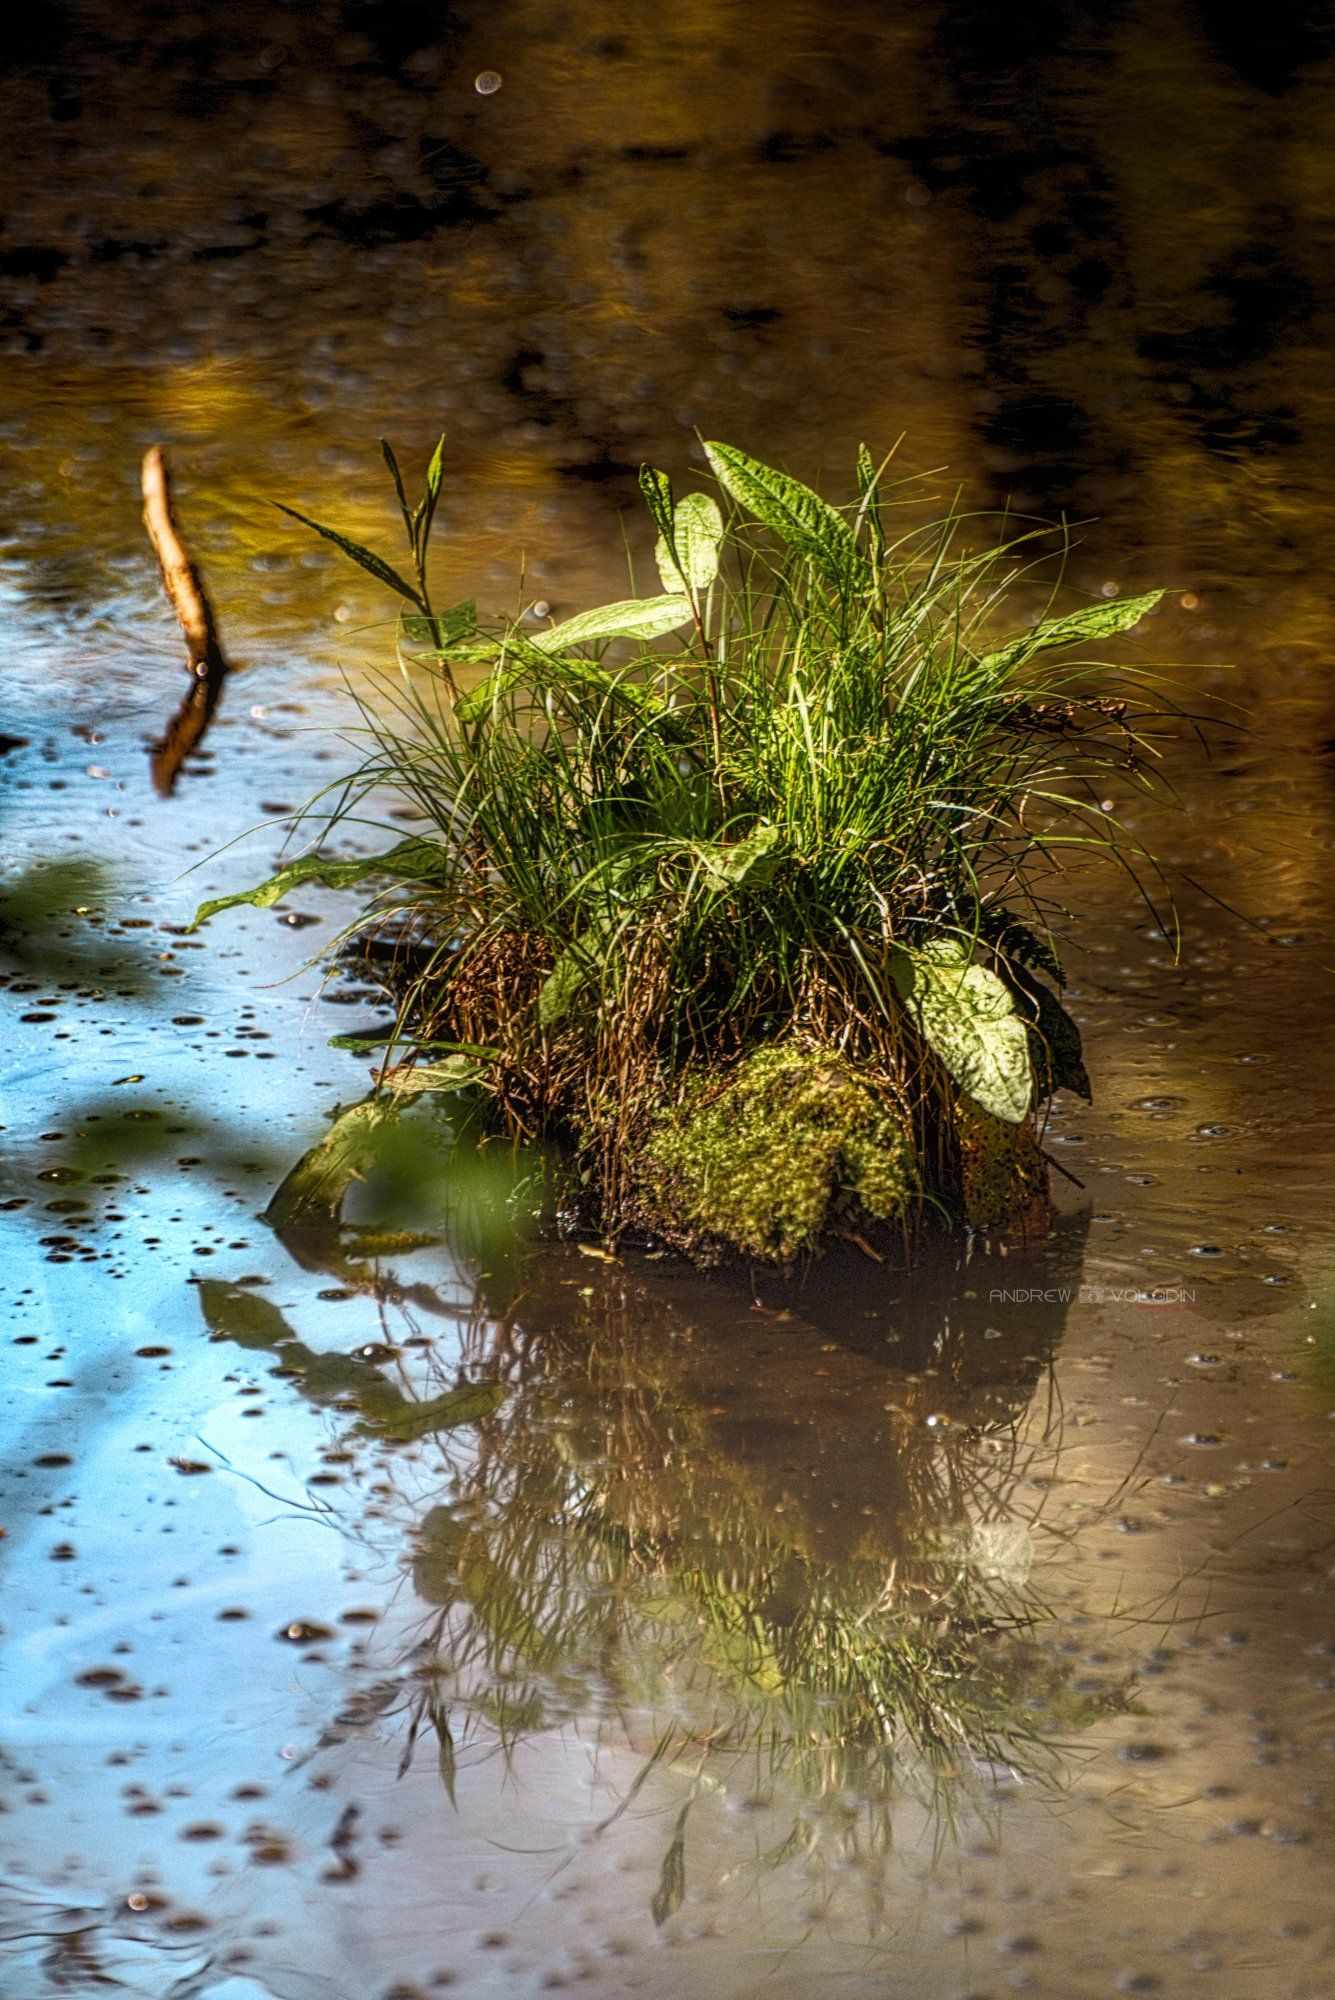 болото кочка природа трава солнце листья вода отражение, Андрей Володин